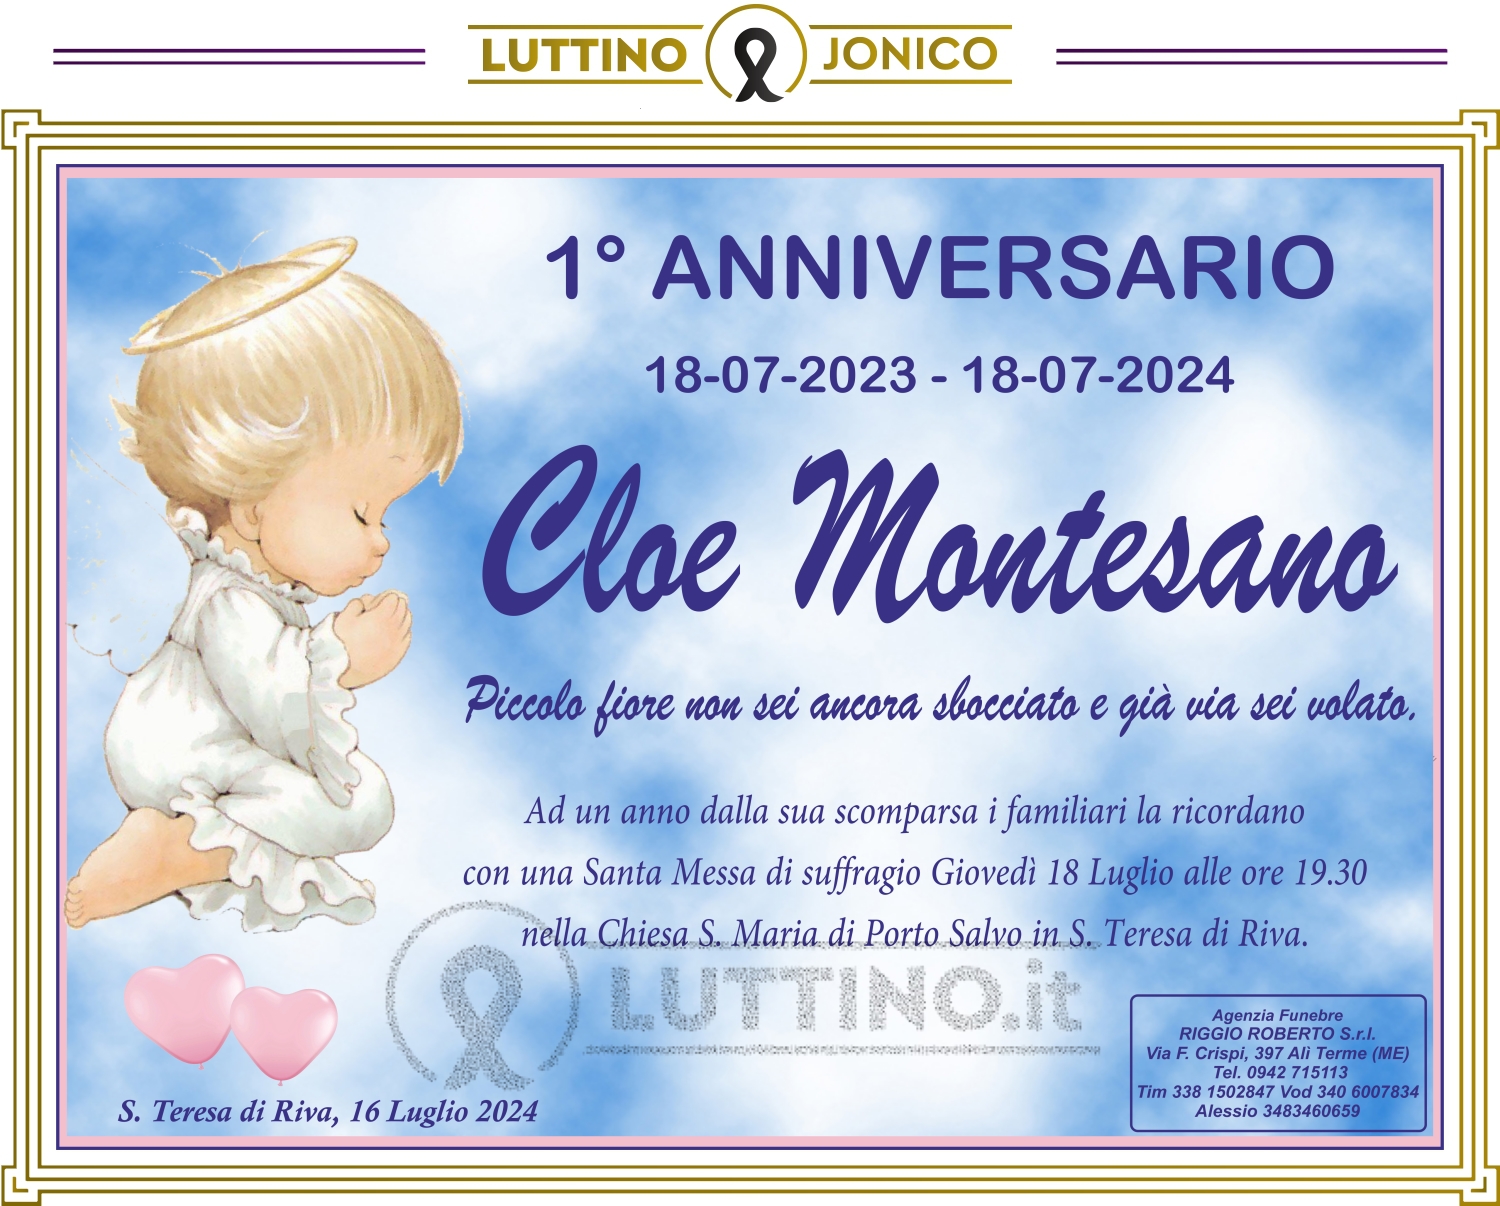 Cloe Montesano